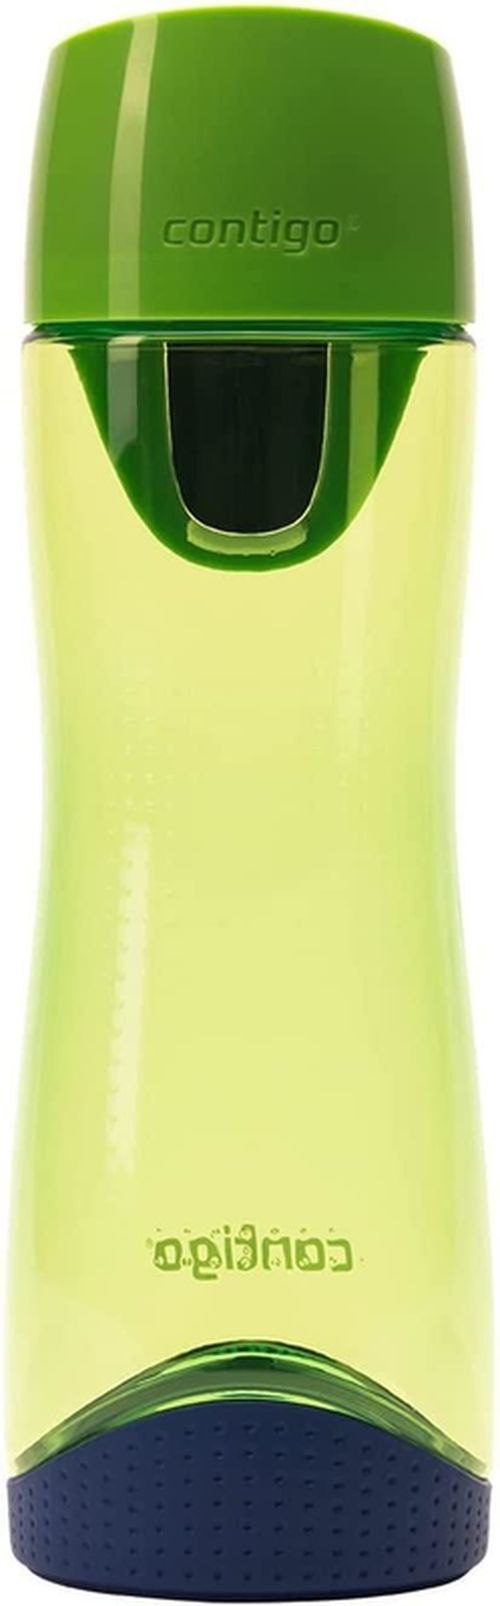 купить Бутылочка для воды Contigo Swish Citron 500 ml в Кишинёве 